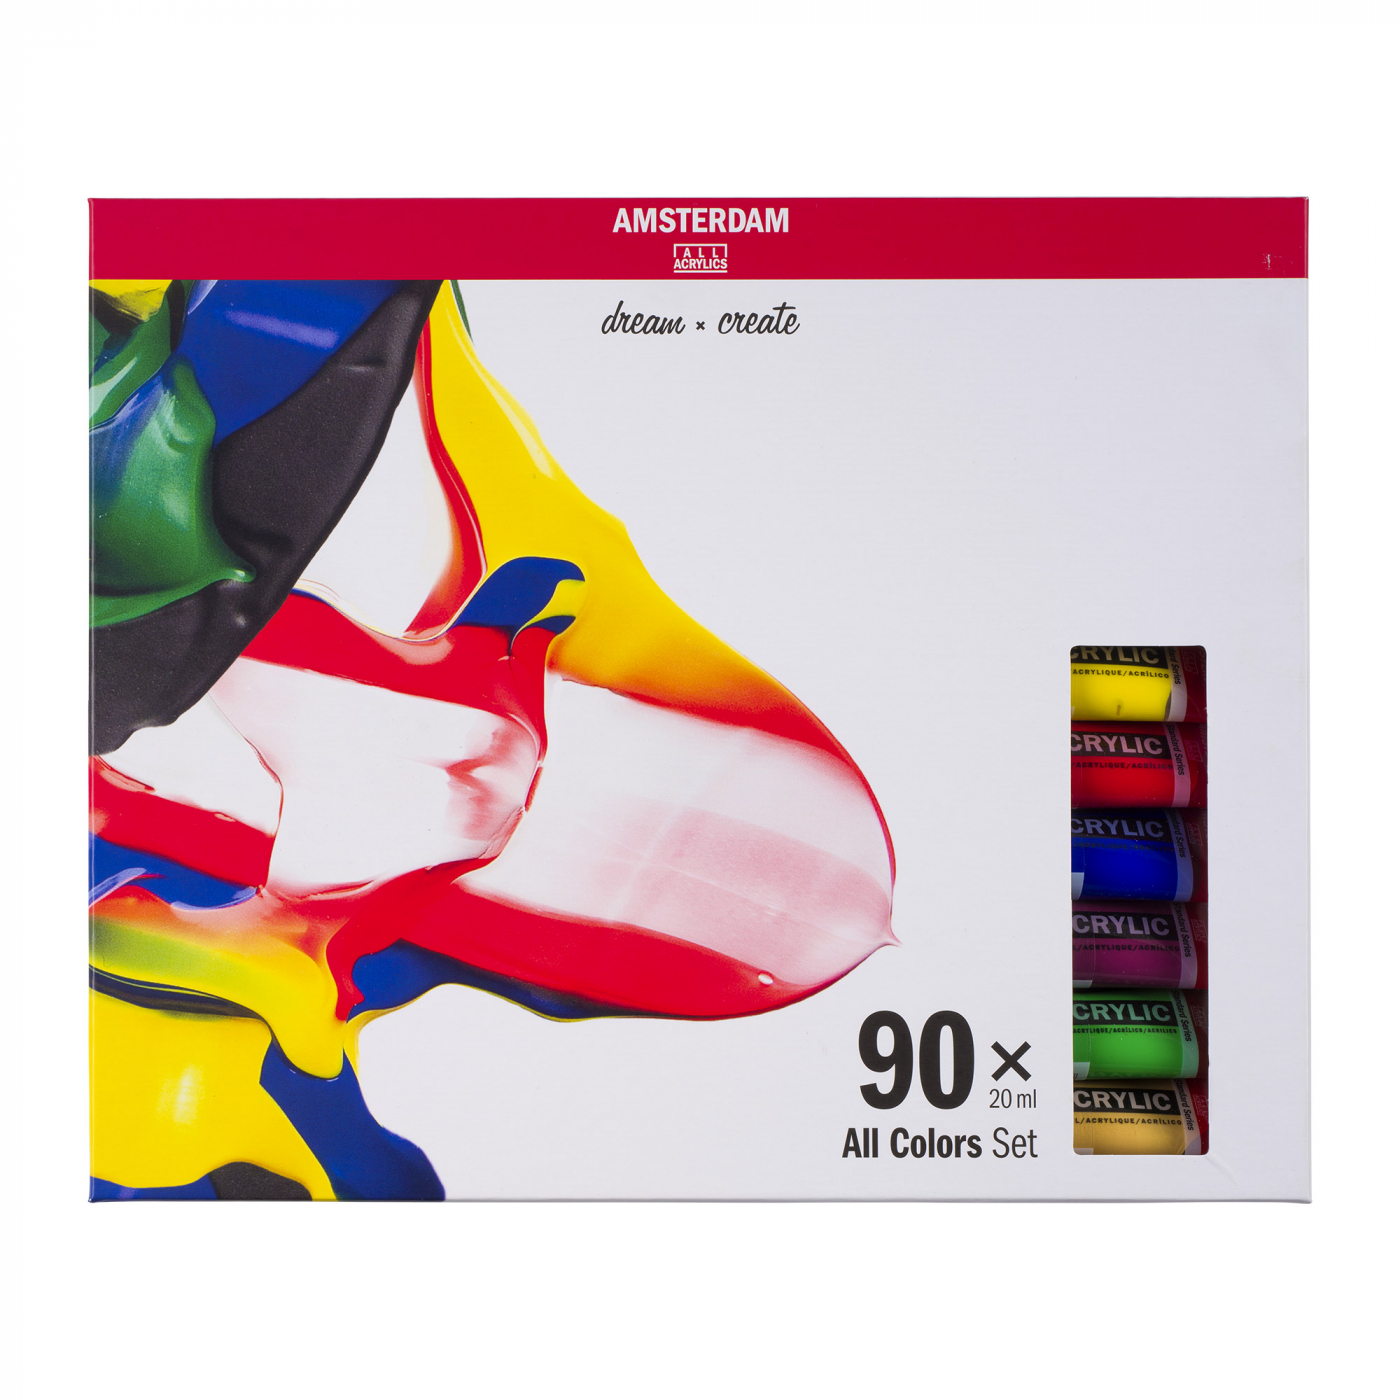  Akrylfarge Standard Set 90 x 20 ml i gruppen Kunstnermateriell / Farger / Akrylfarge hos Pen Store (111762)